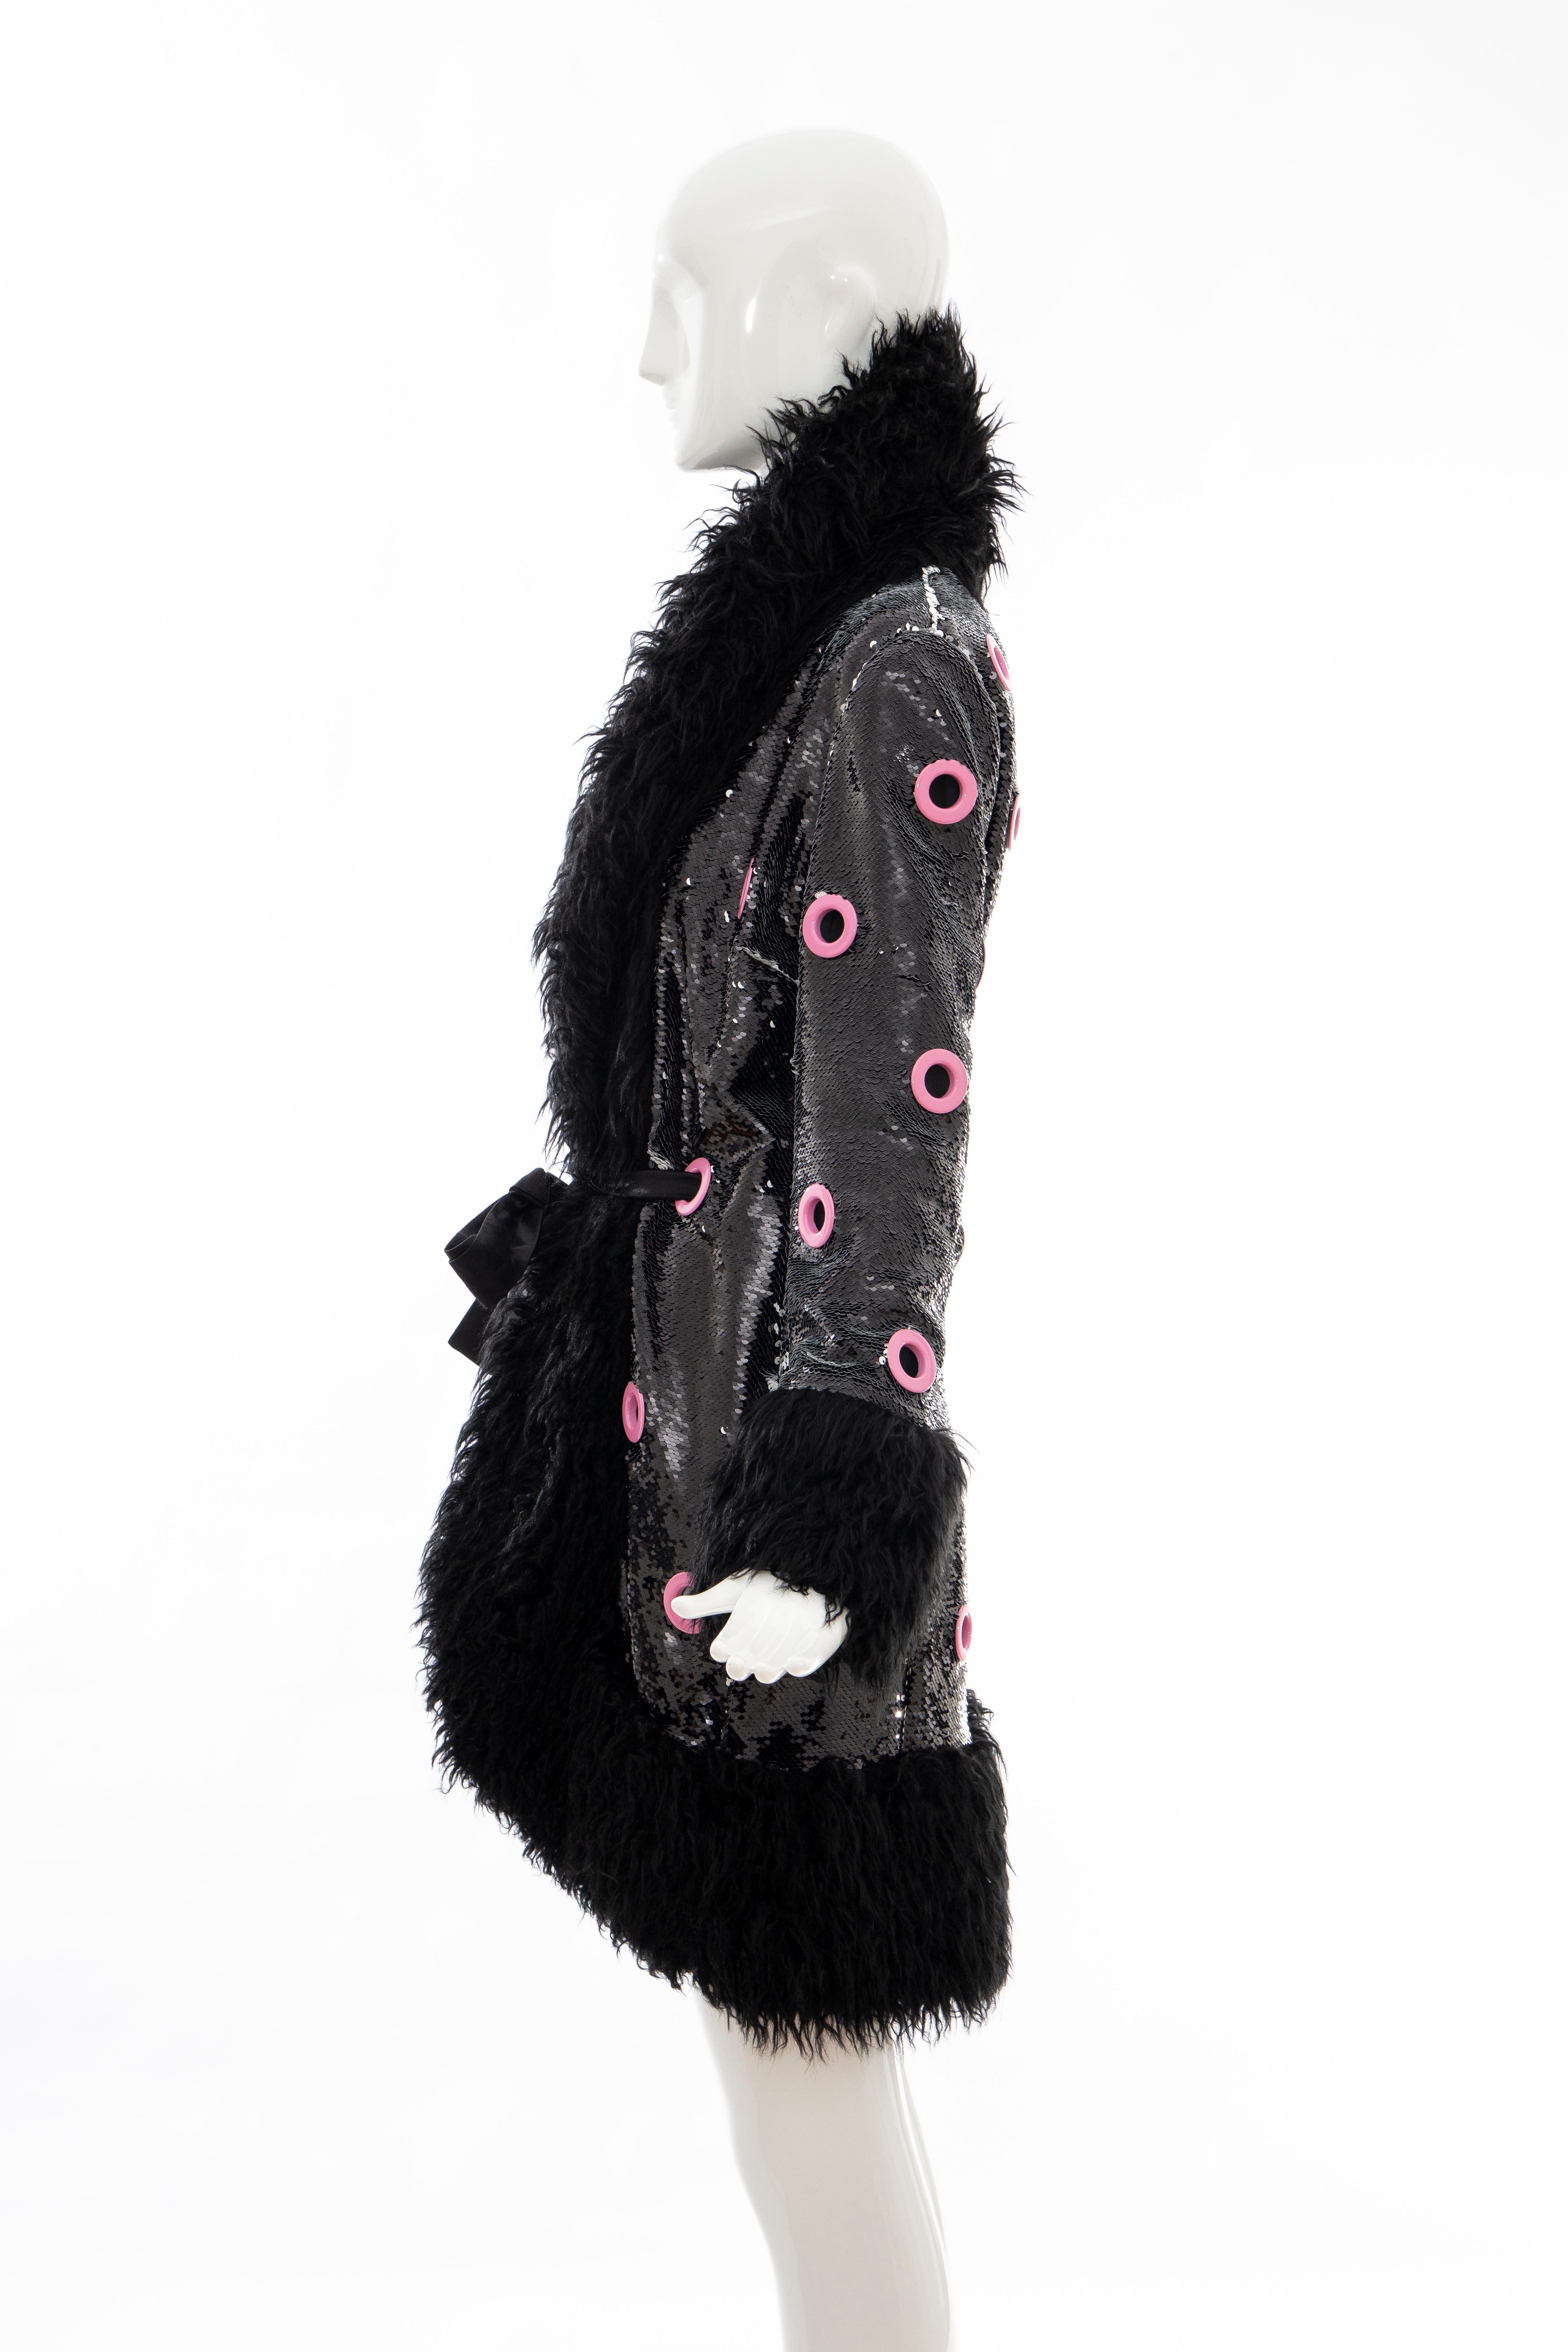 Jeremy Scott Runway Black Sequins Faux Fur Pink Enamel Grommets Coat, Fall 2016 6